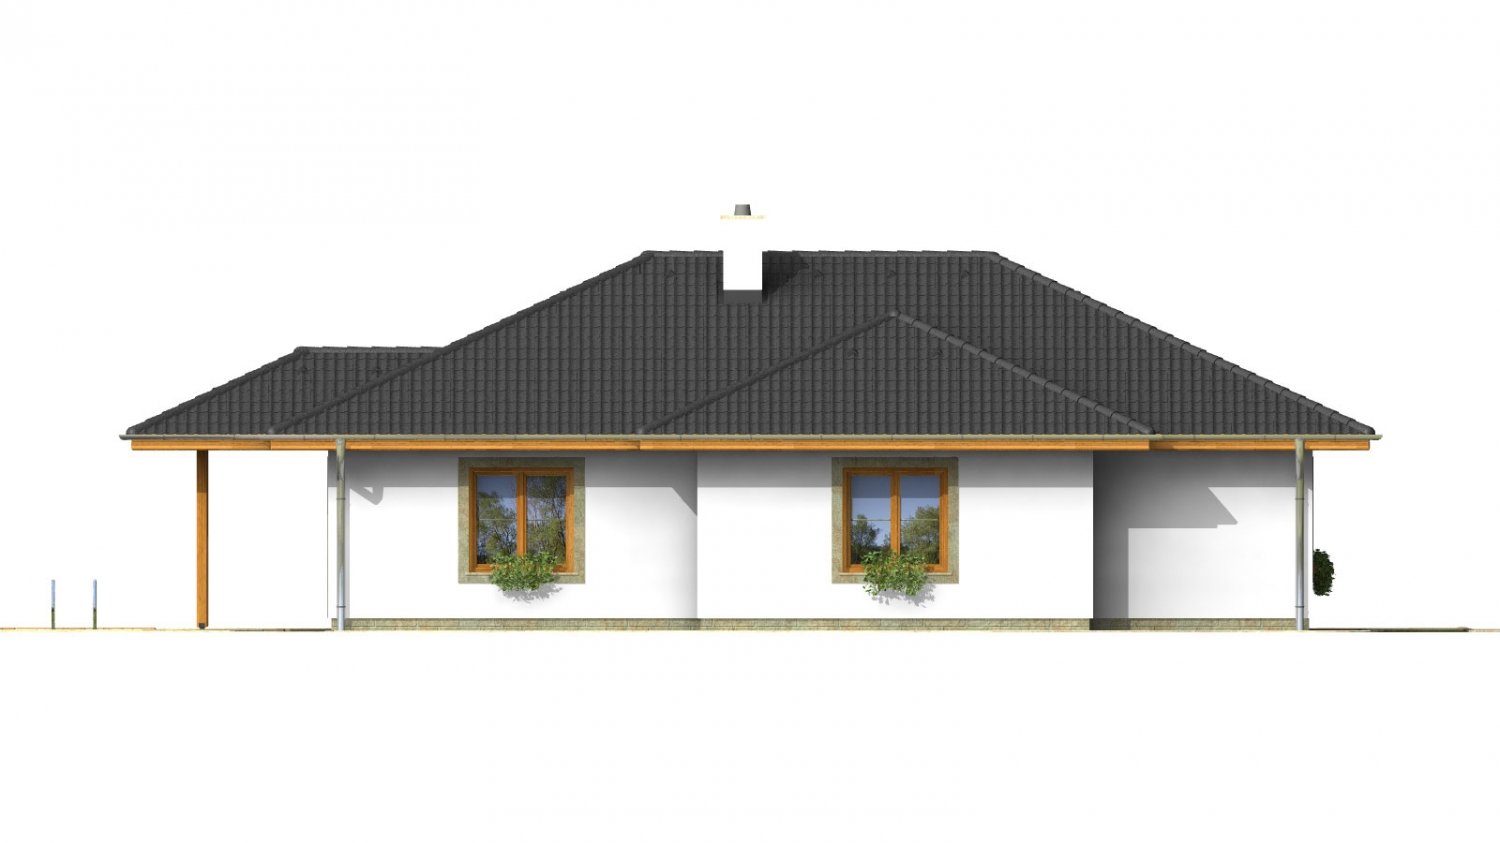 Zrkadlový pohľad 3. - Klasický projekt přízemního rodinného domu s valbovými střechami, vhodný i na užší pozemek.